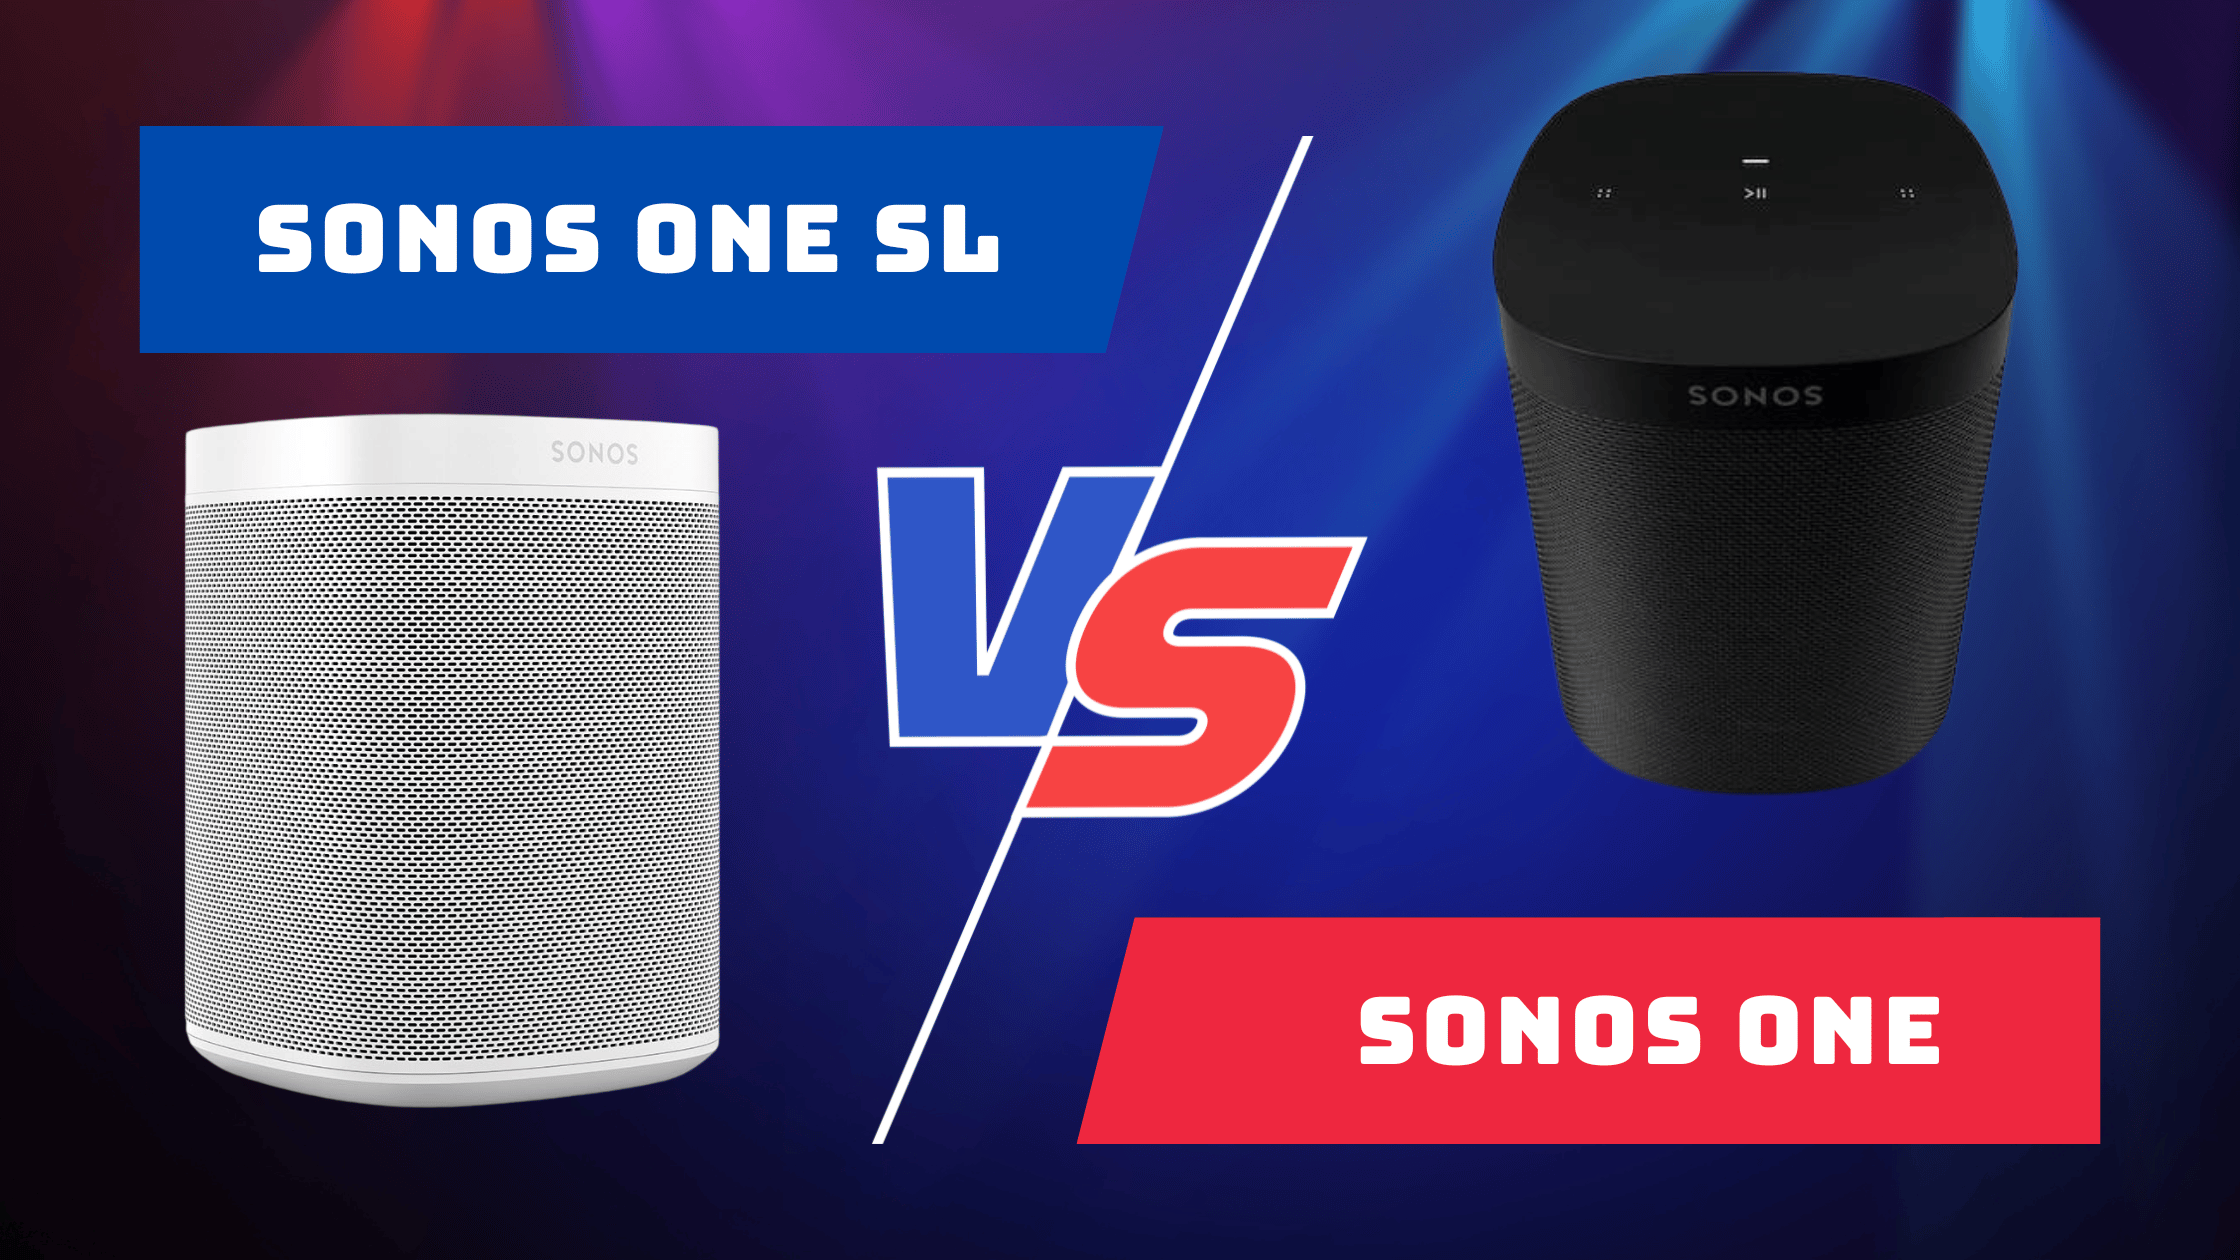 Sonos One Sl Vs Sonos One